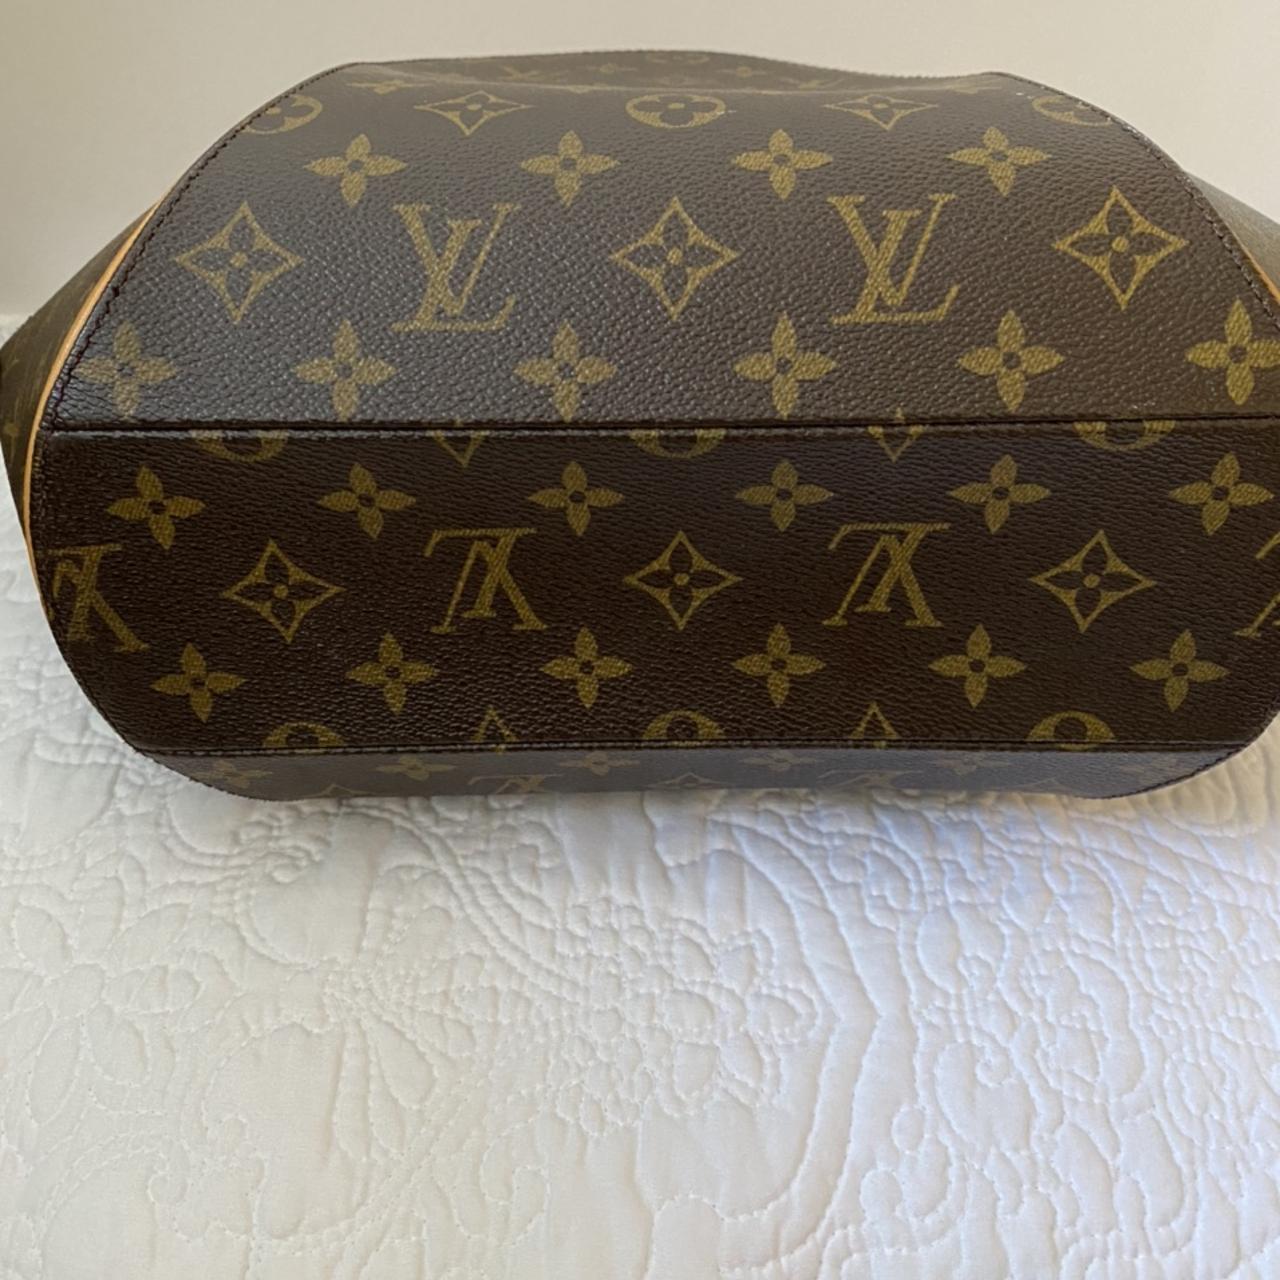 Louis Vuitton Handbag Louis Vuitton Ellipse Pm - Depop